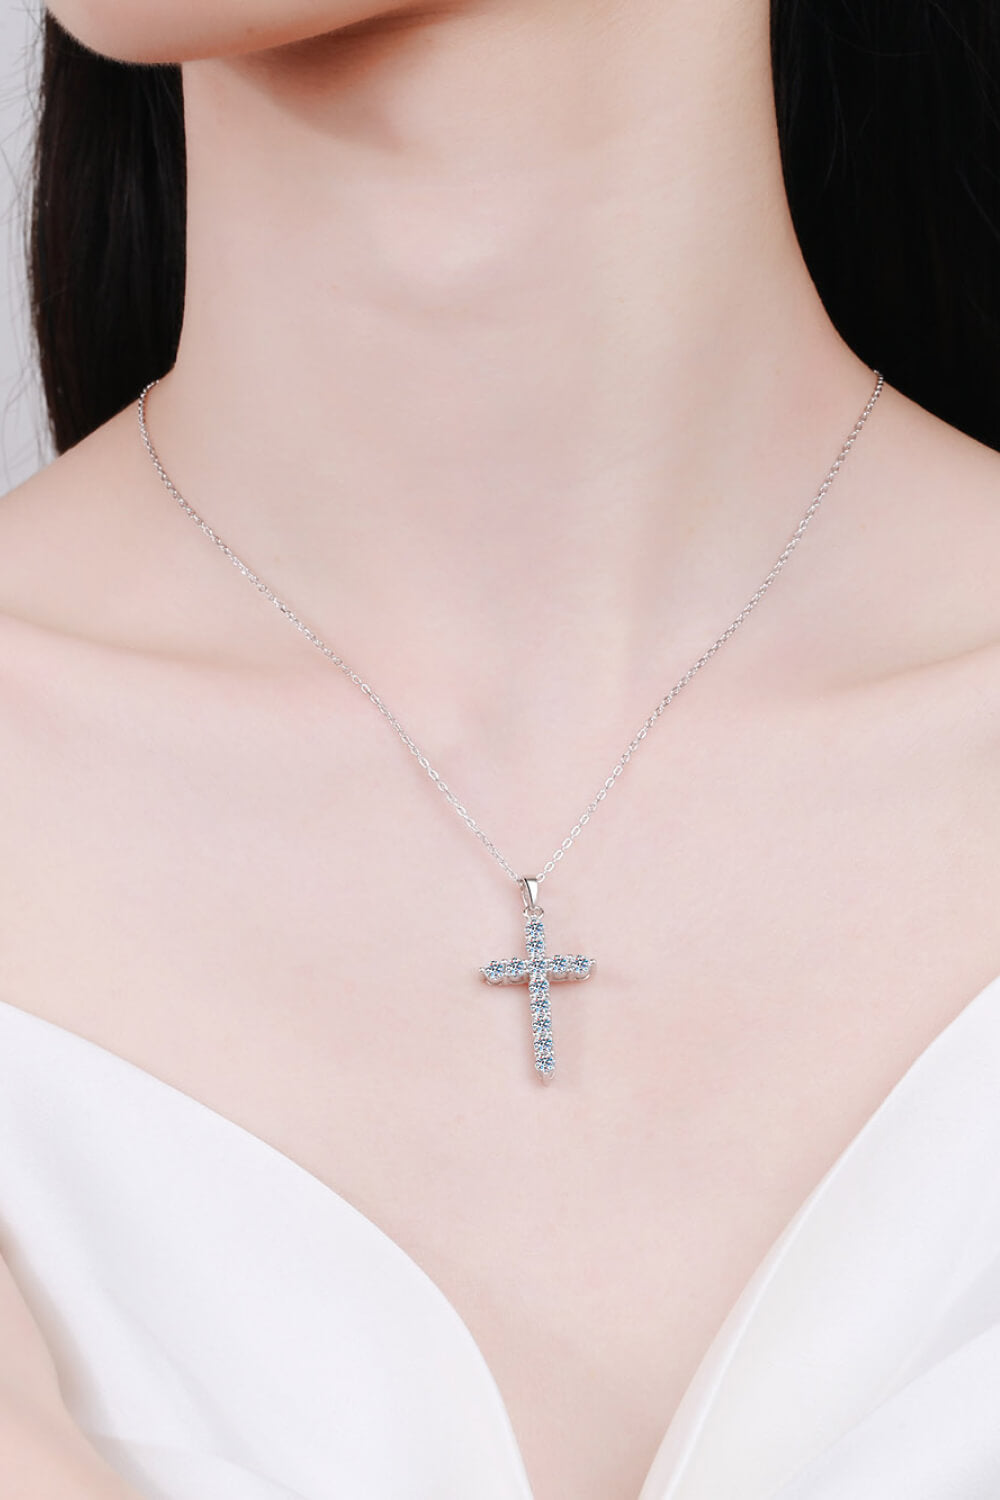 Le’Cross solitaire Necklace